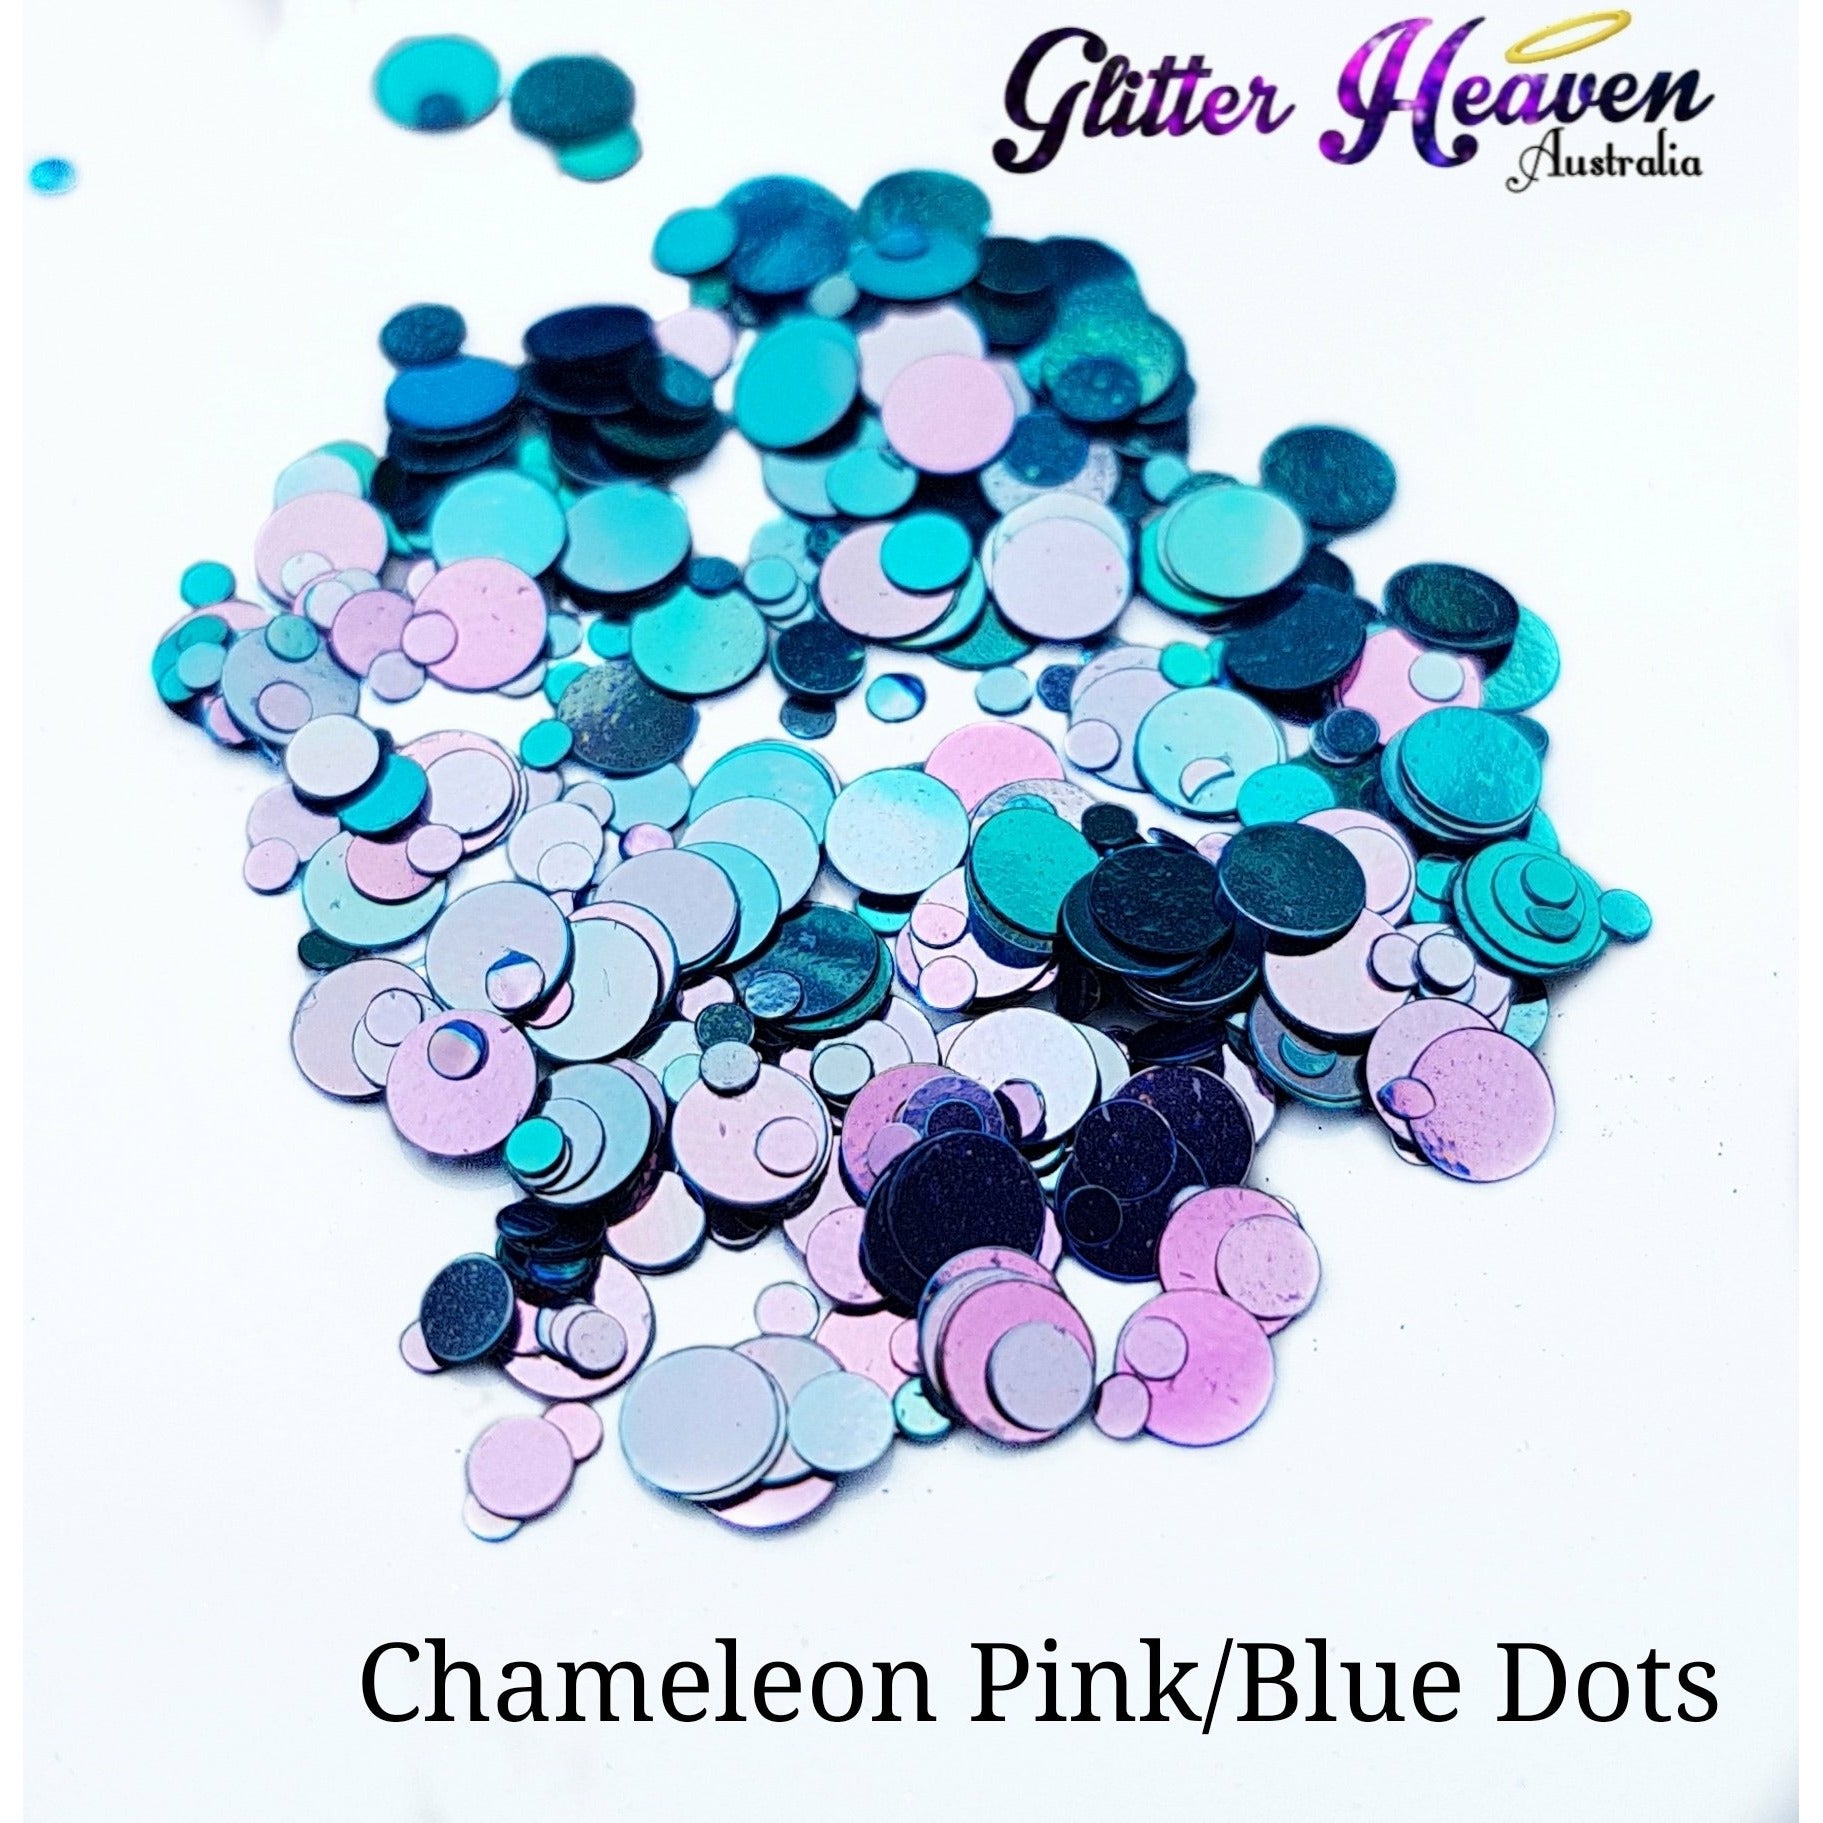 Chameleon Pink/Blue Dots